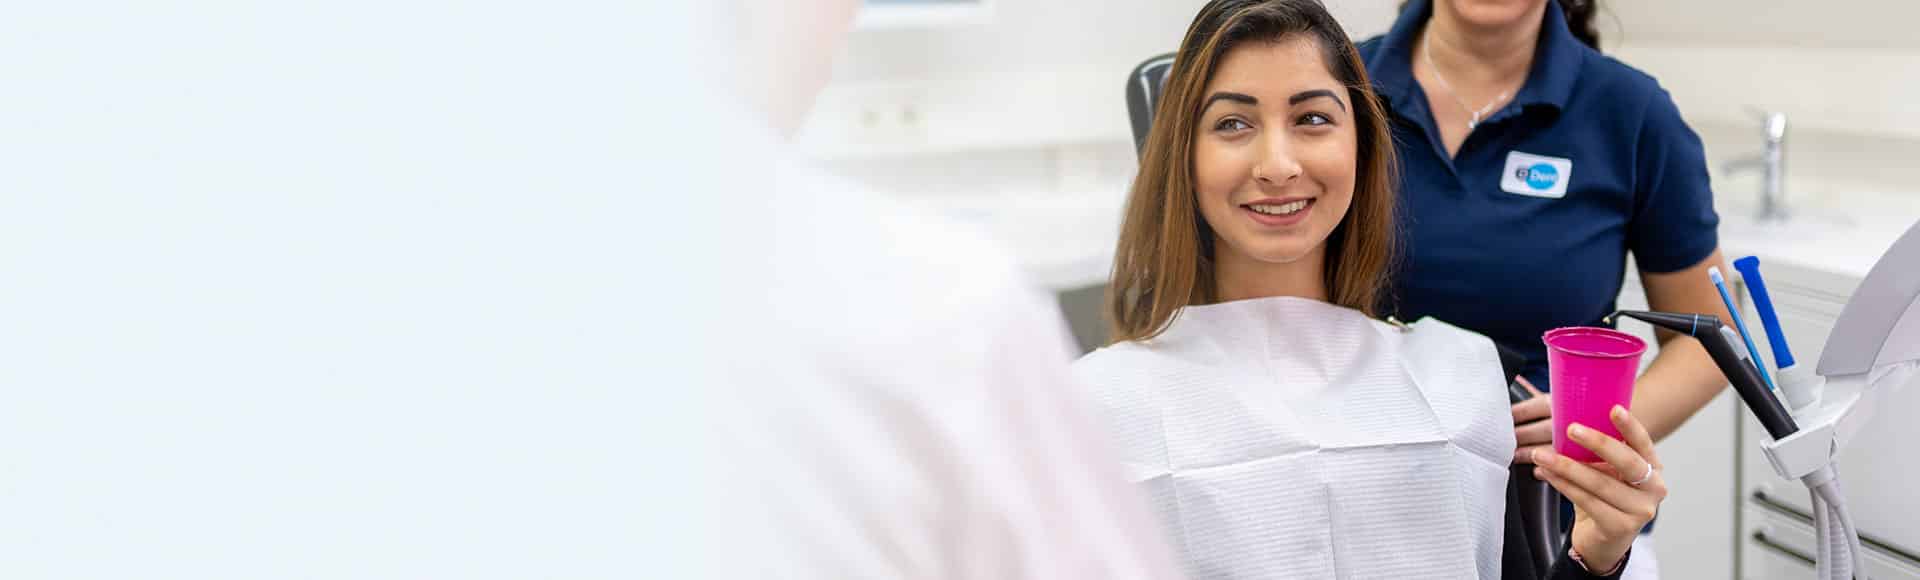 Zahnfüllungen und Inlays bei Ihrem Zahnarzt in Quakenbrück